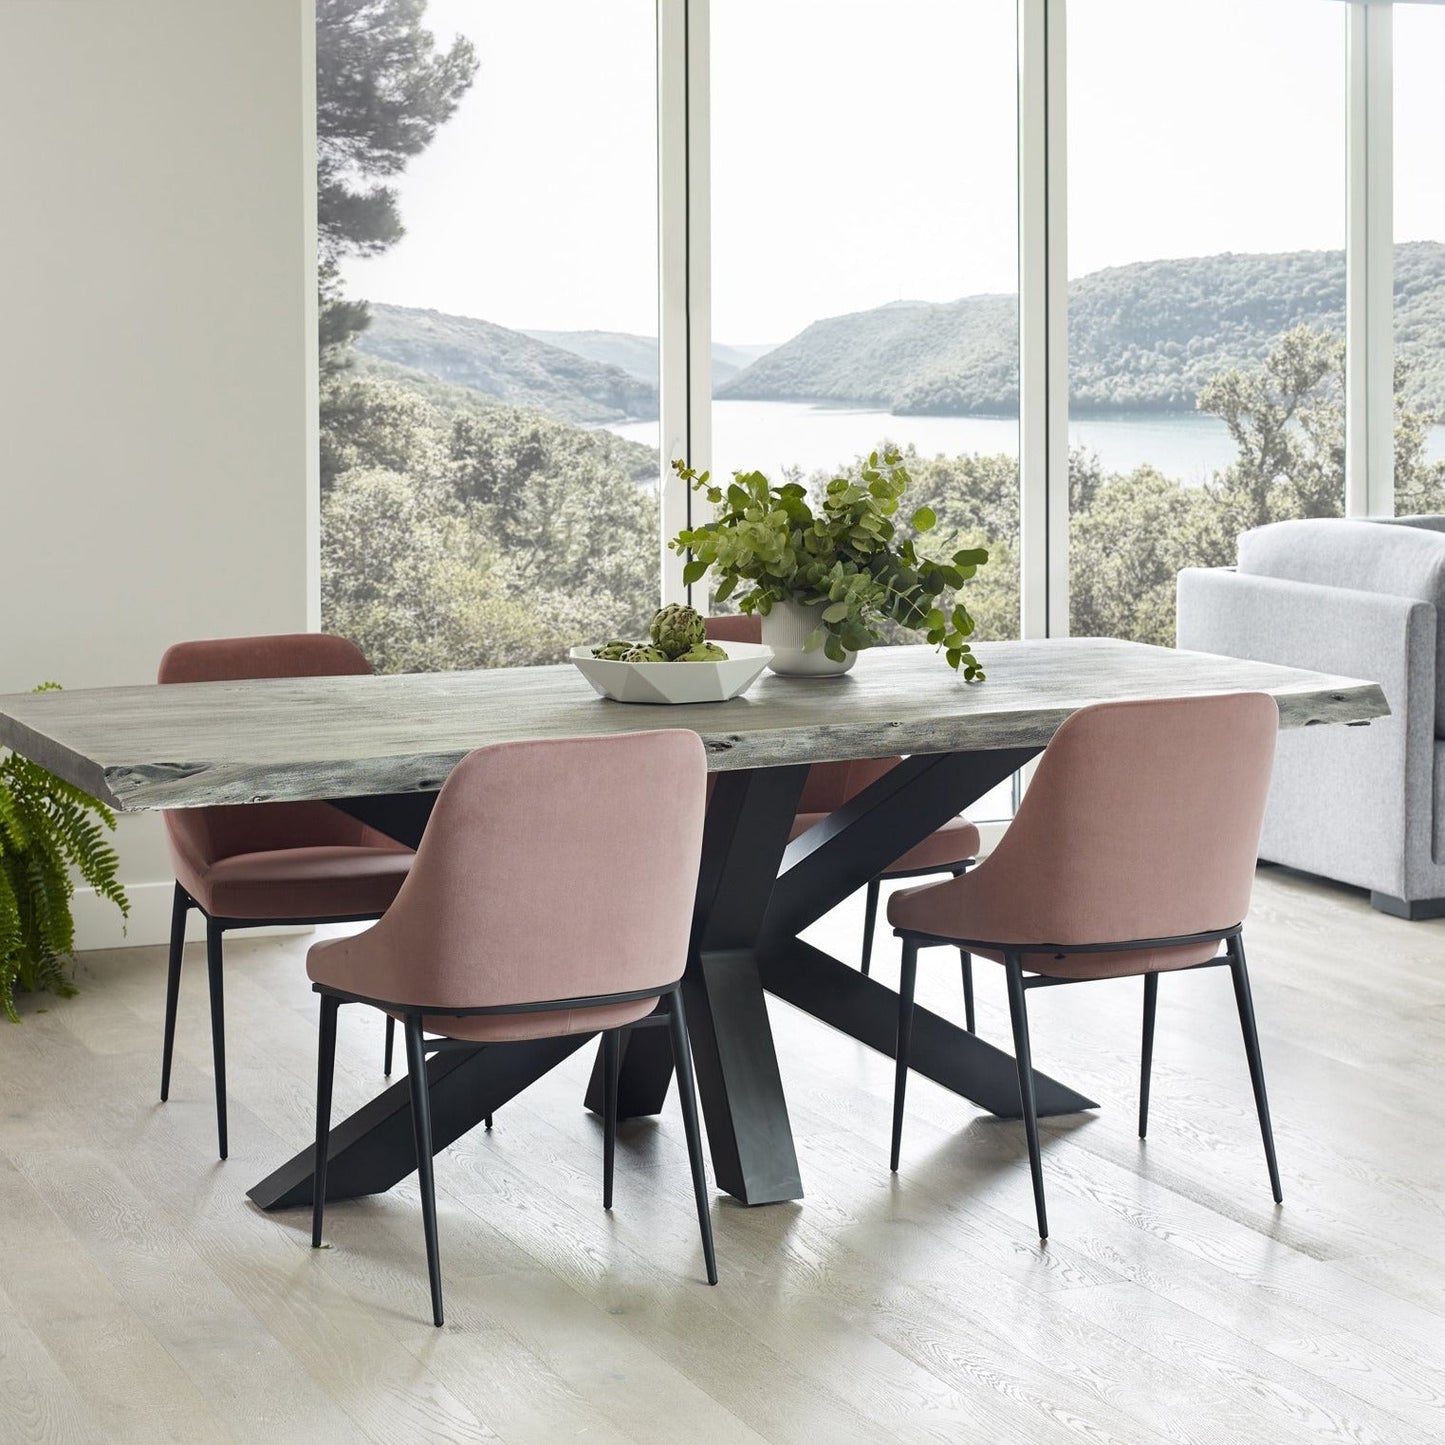 Modern Pink Velvet Dining Chair Set of 2